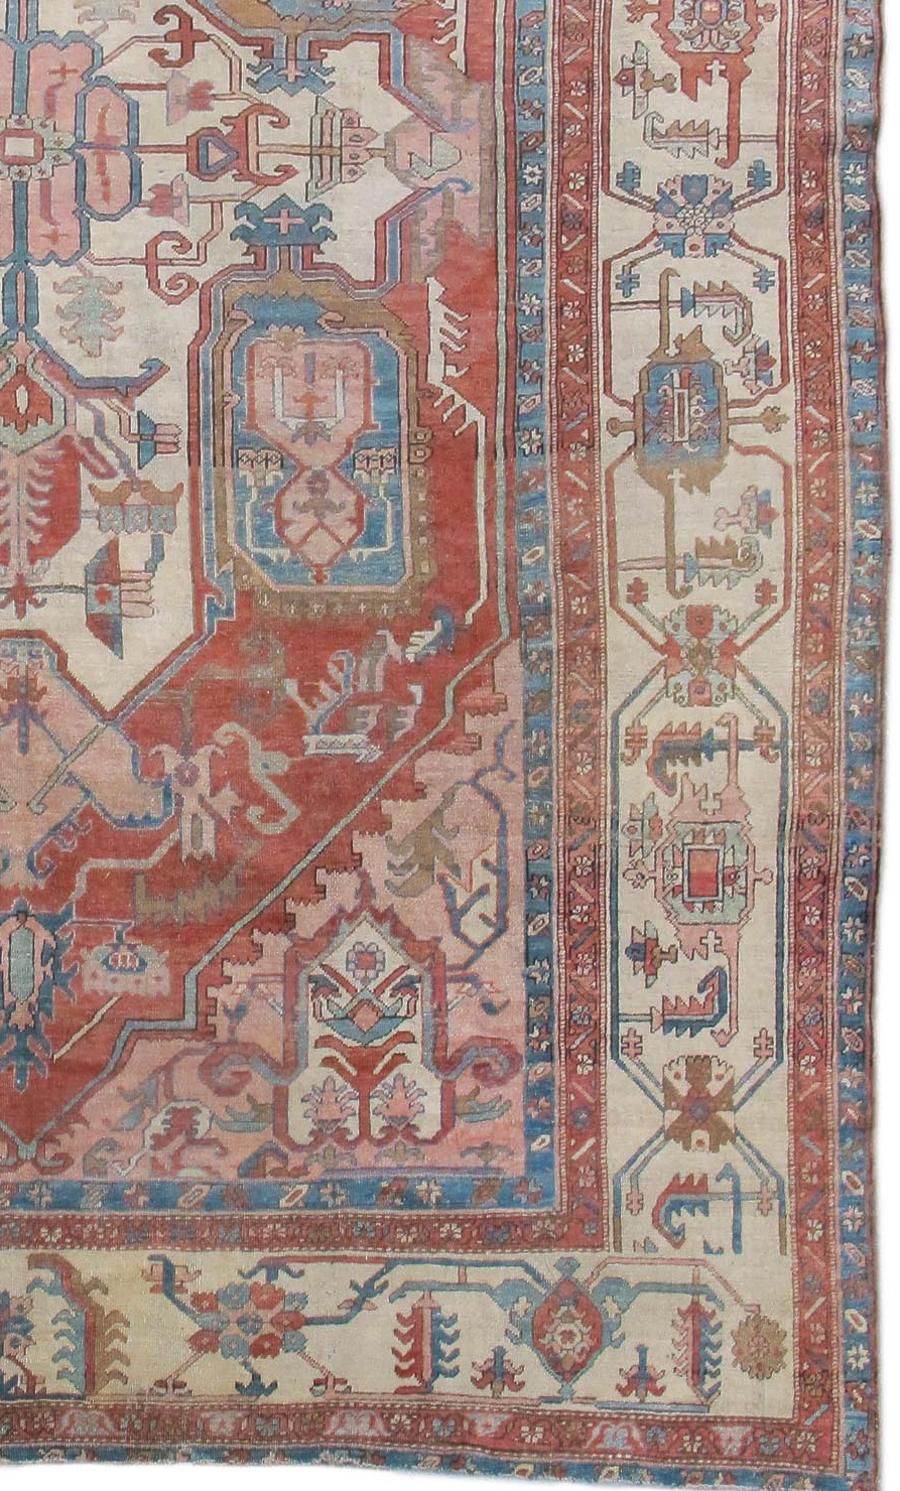 Serapi-Teppiche aus dem Heriz-Distrikt im Nordwesten Persiens sind bekannt für ihre Mischung aus kühnen Grafiken und einem eher traditionellen und eleganten Format. Dieses Serapi zeichnet ein großes zentrales Medaillon, das fast das gesamte Feld